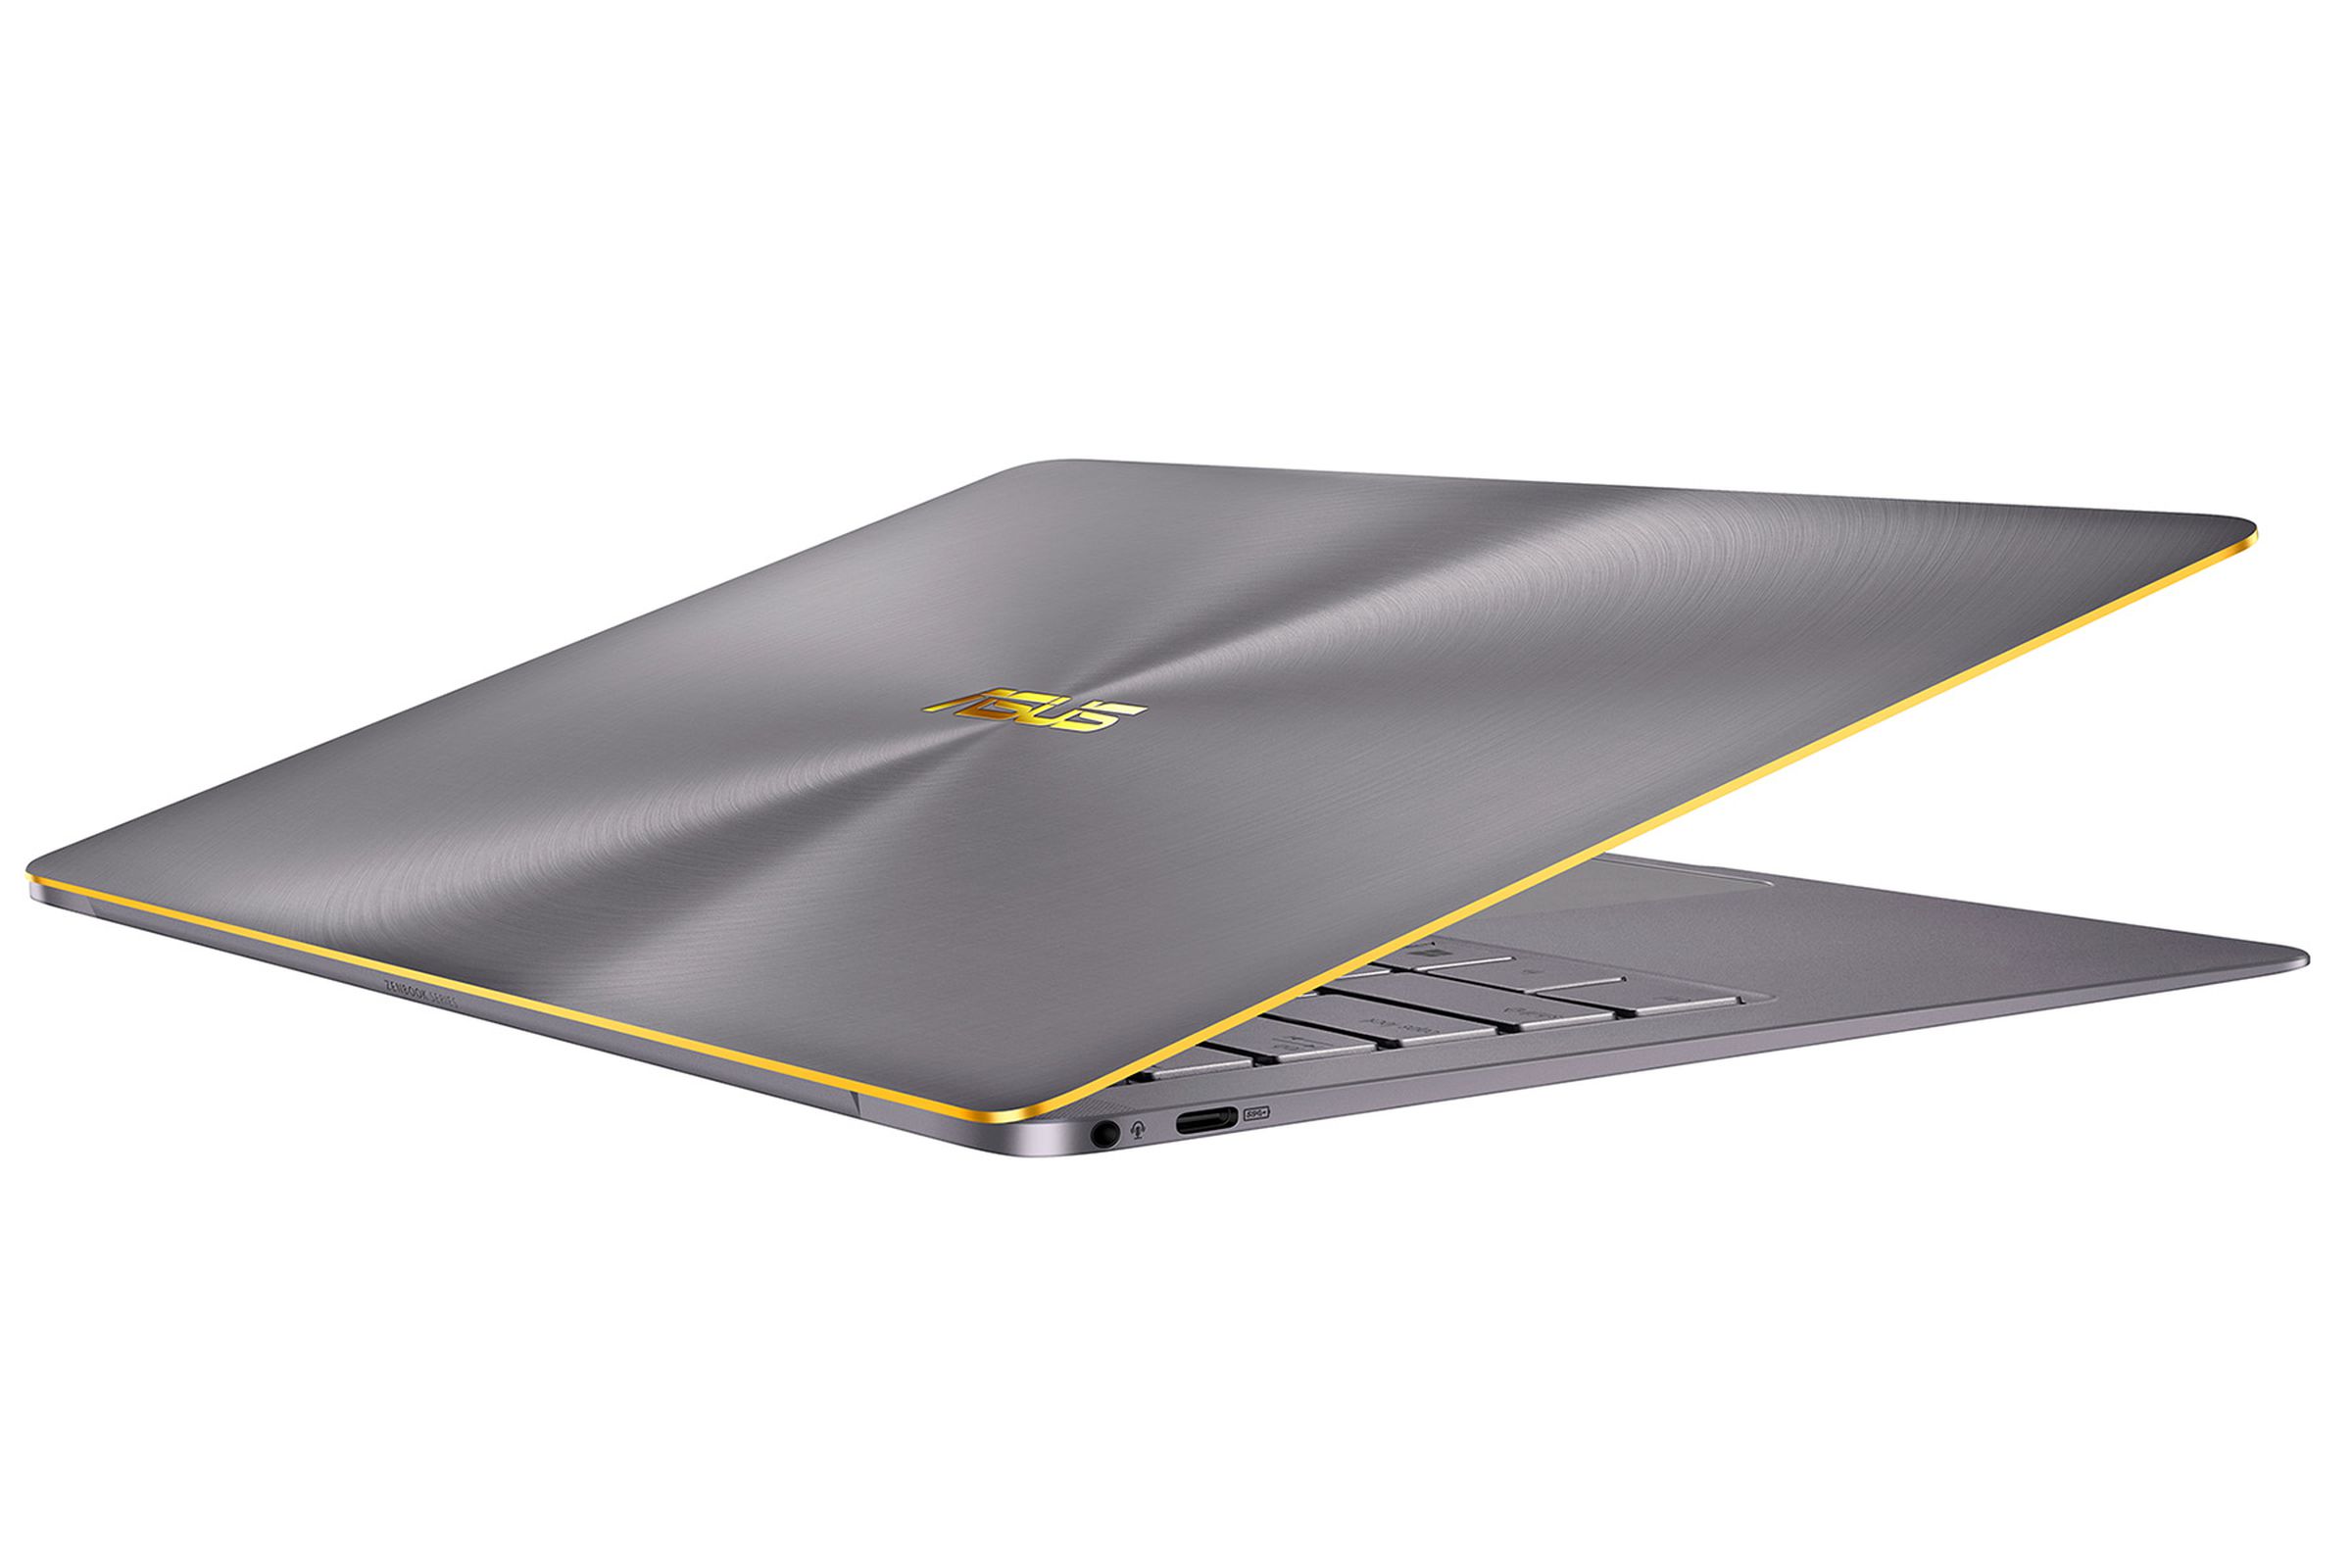 Asus ZenBook 3 Deluxe